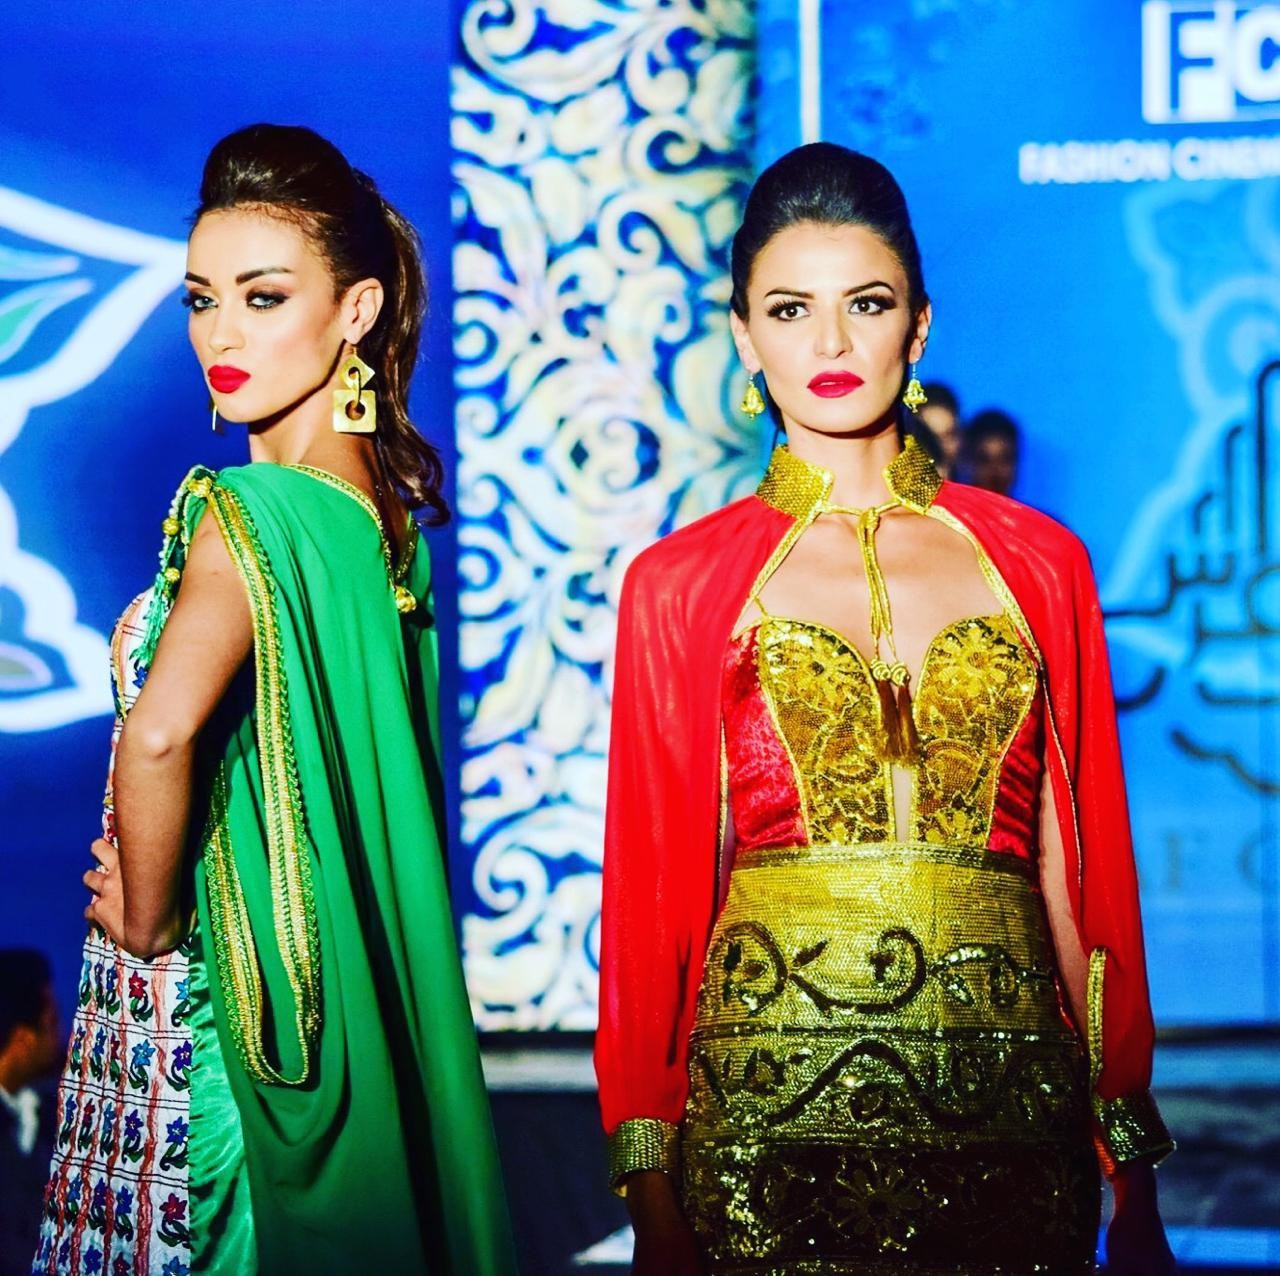 نزار شرقي يتألق في احتفال سينما الموضة في تونس 